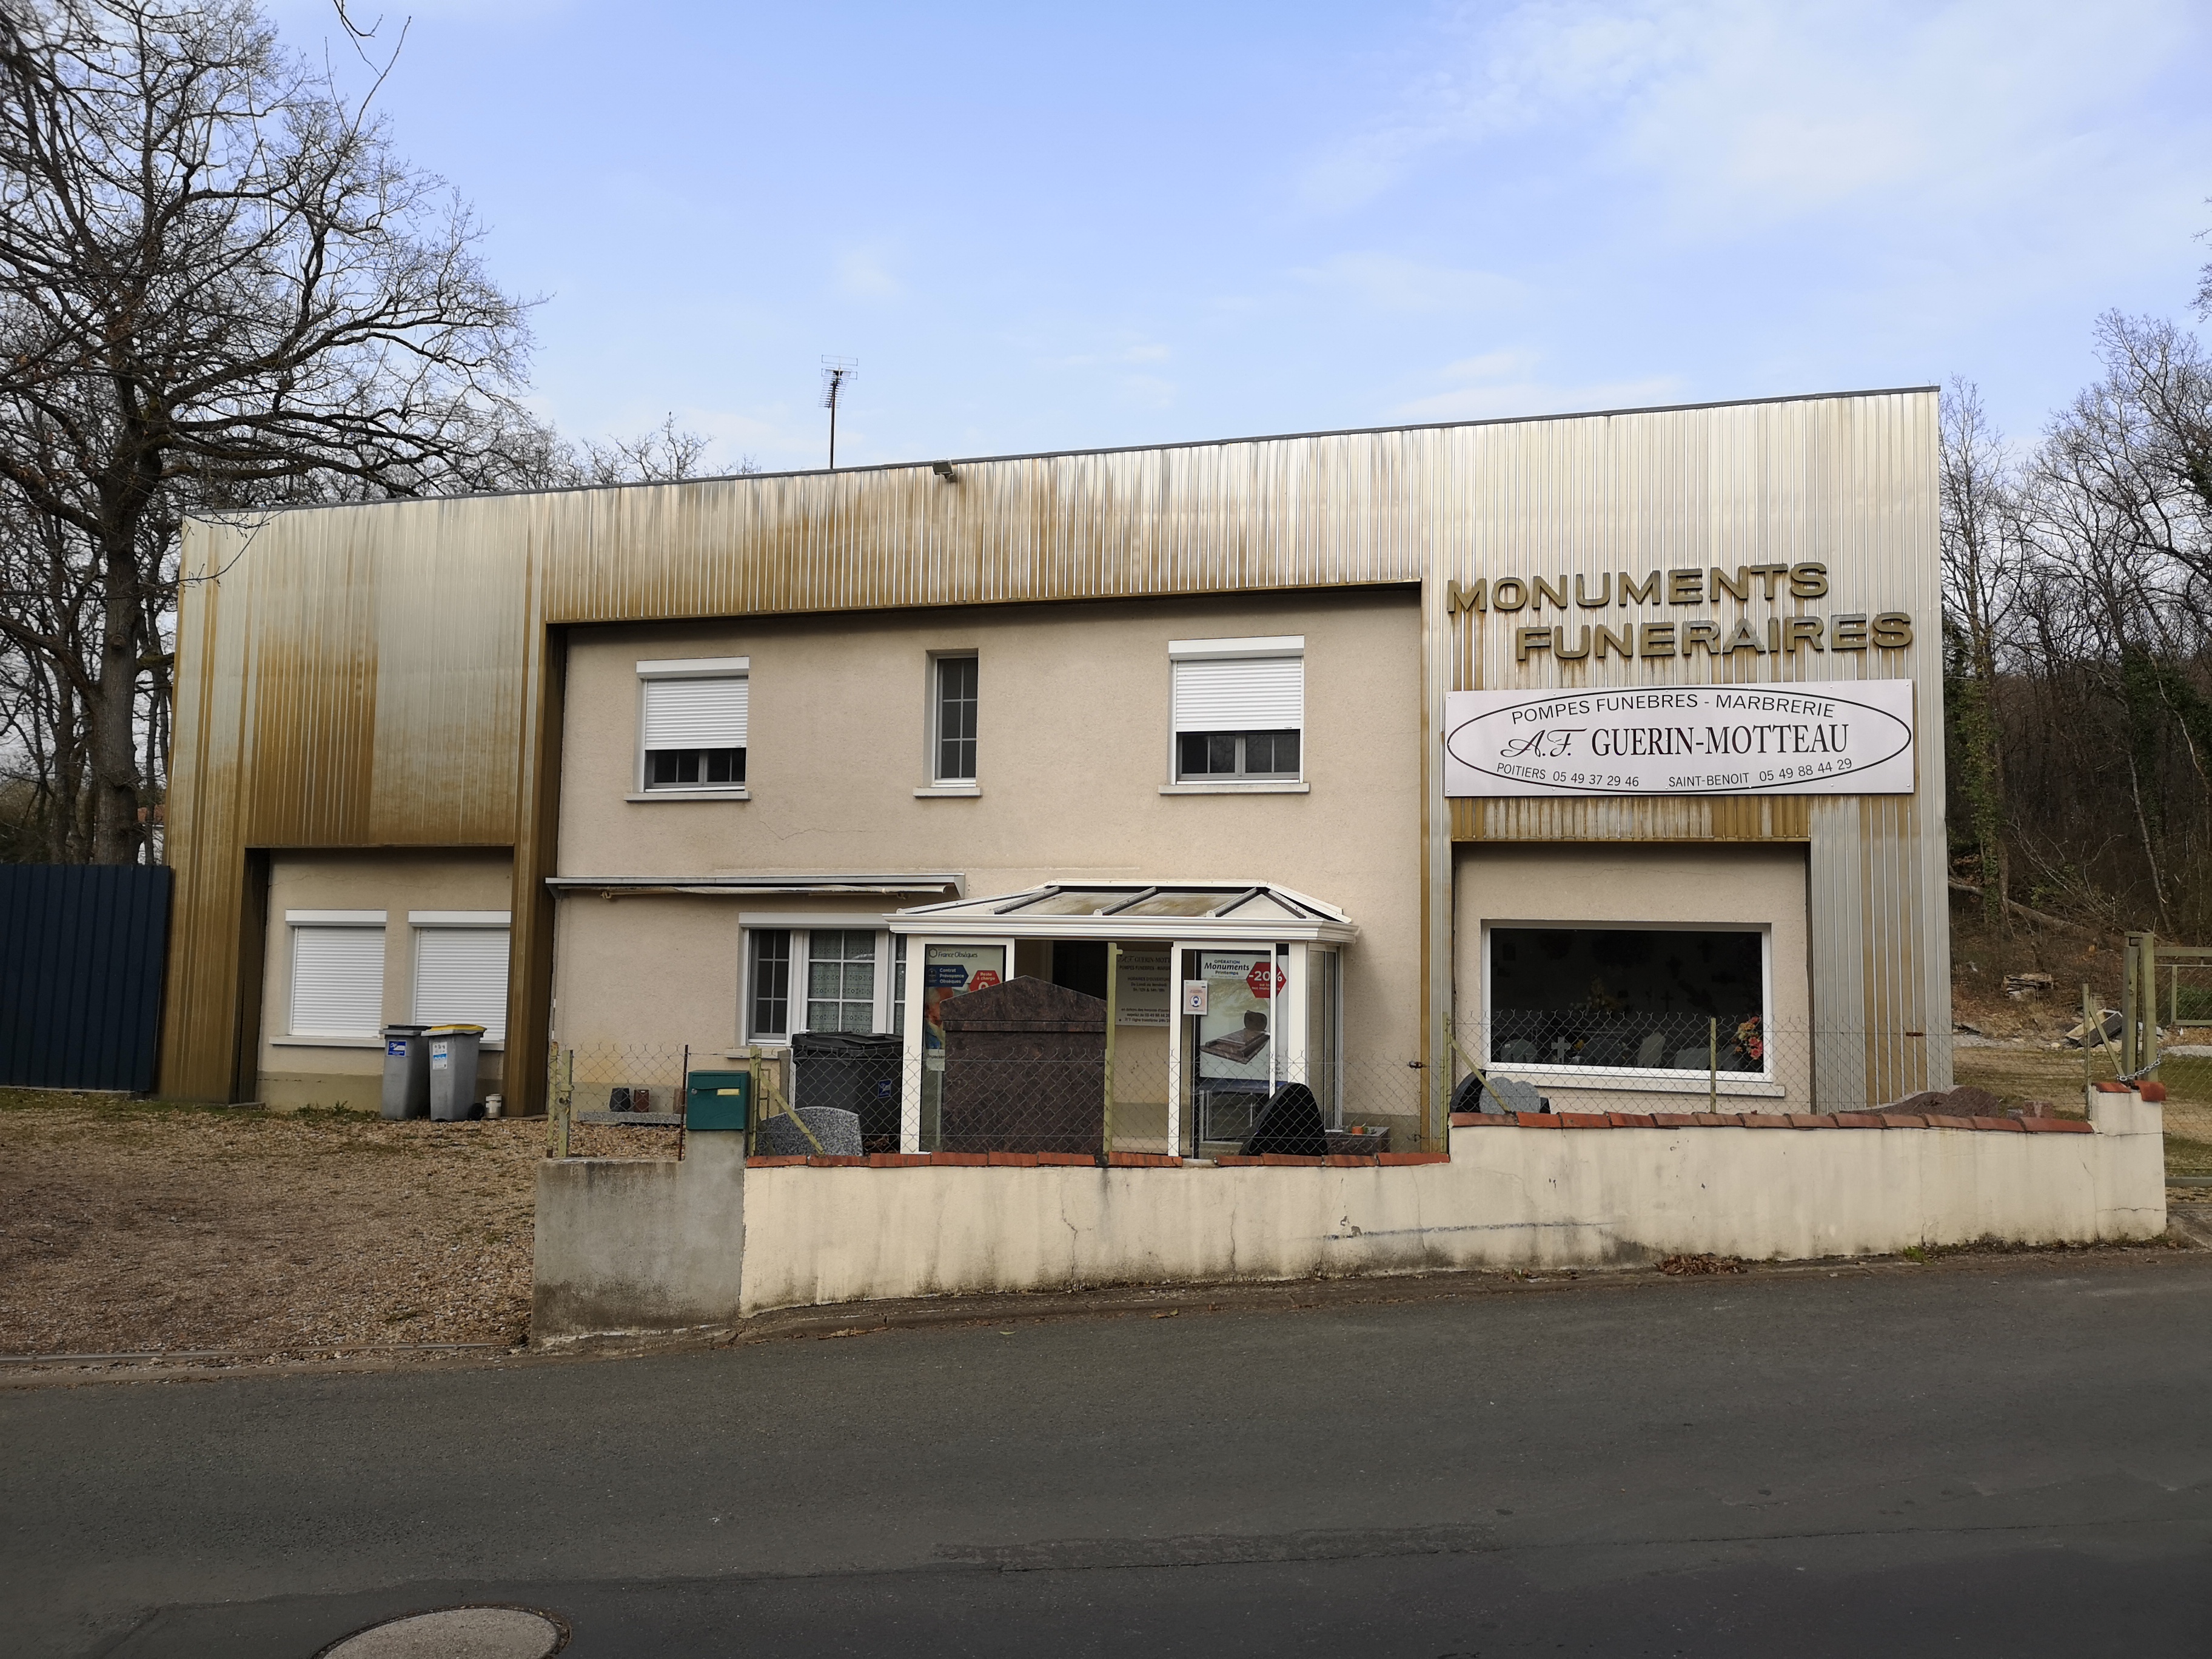 Accompagnement funéraire Guerin-Motteau - Saint-Benoît - Borne Au Beurre 